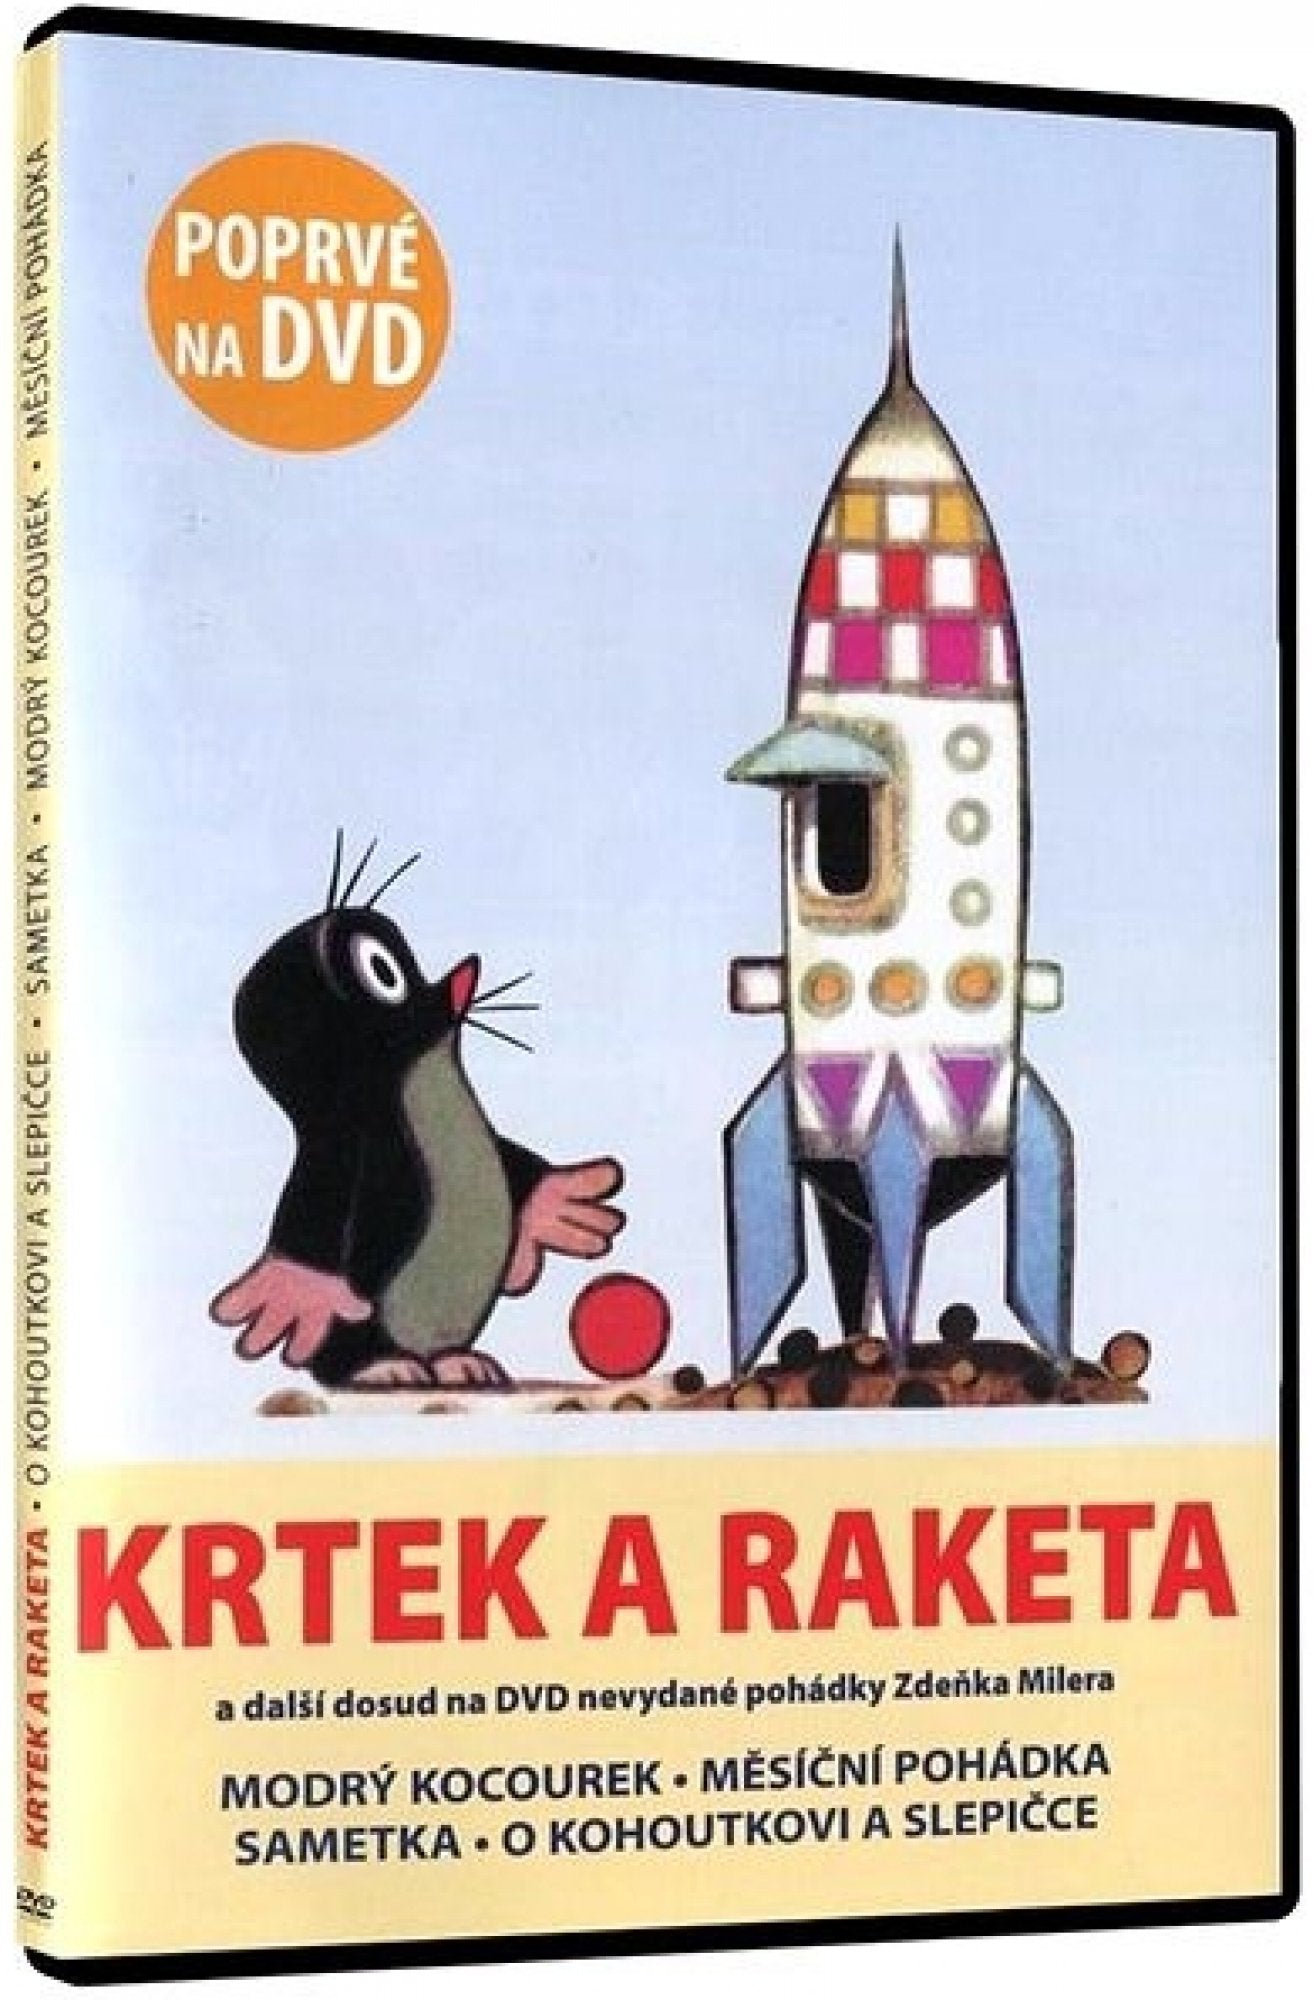 The mole and the rocket / Krtek a raketa